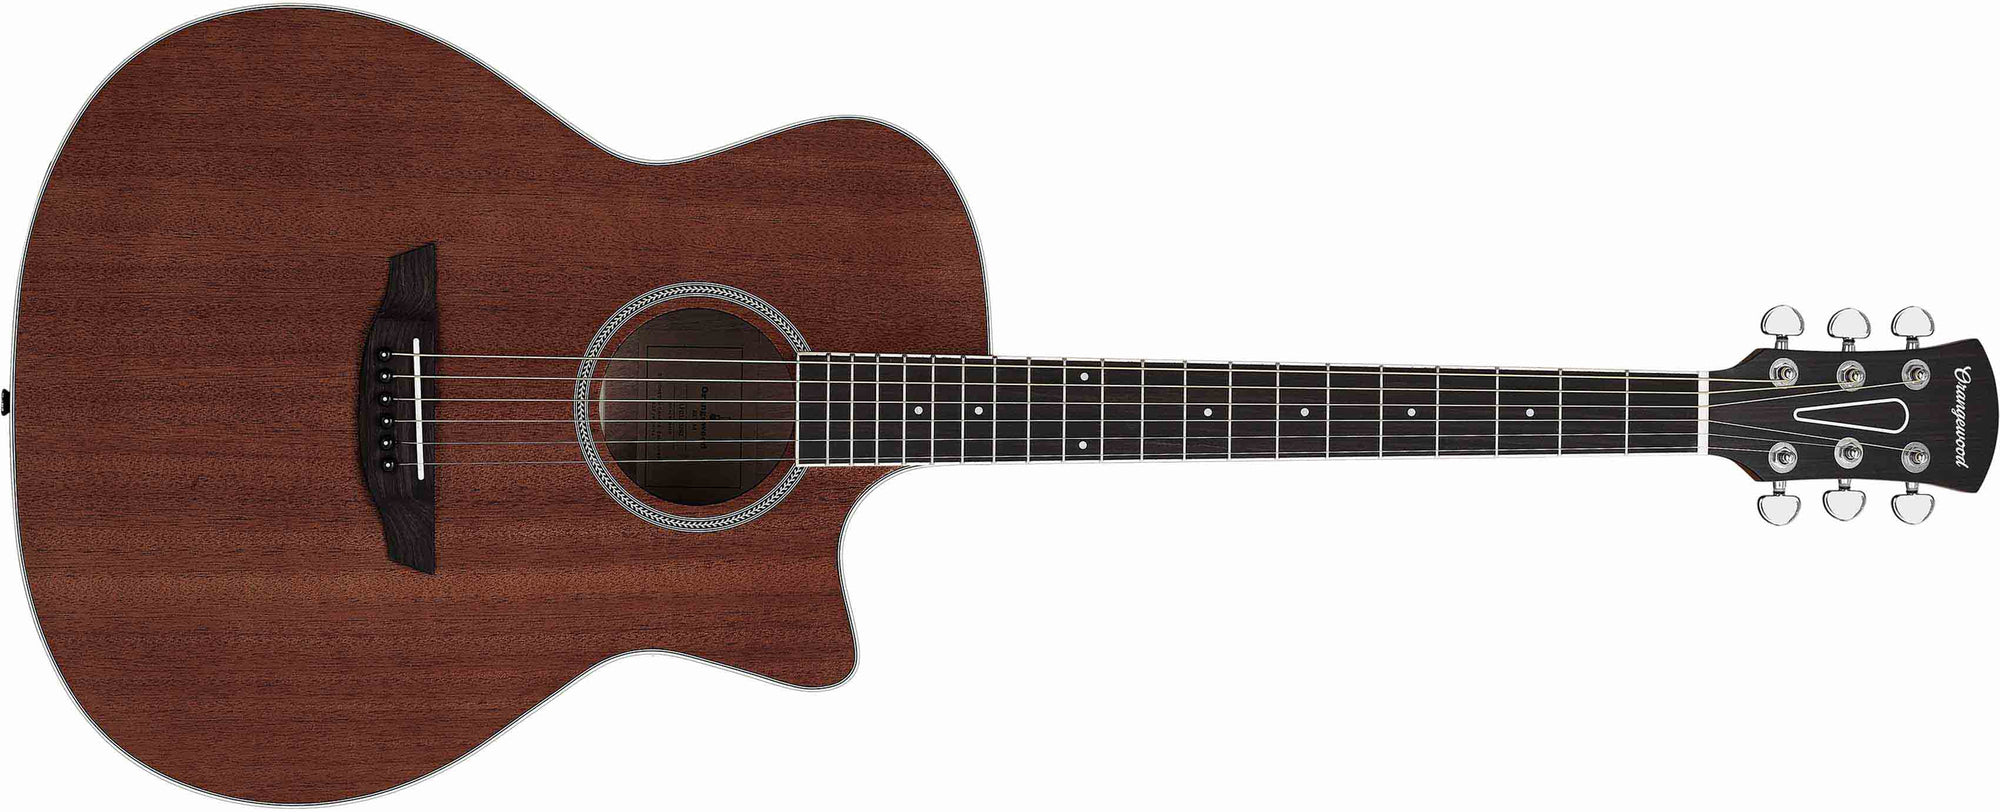 Shop Mahogany Acoustic Guitars Online  Orangewood Guitars - Orangewood  Guitars India